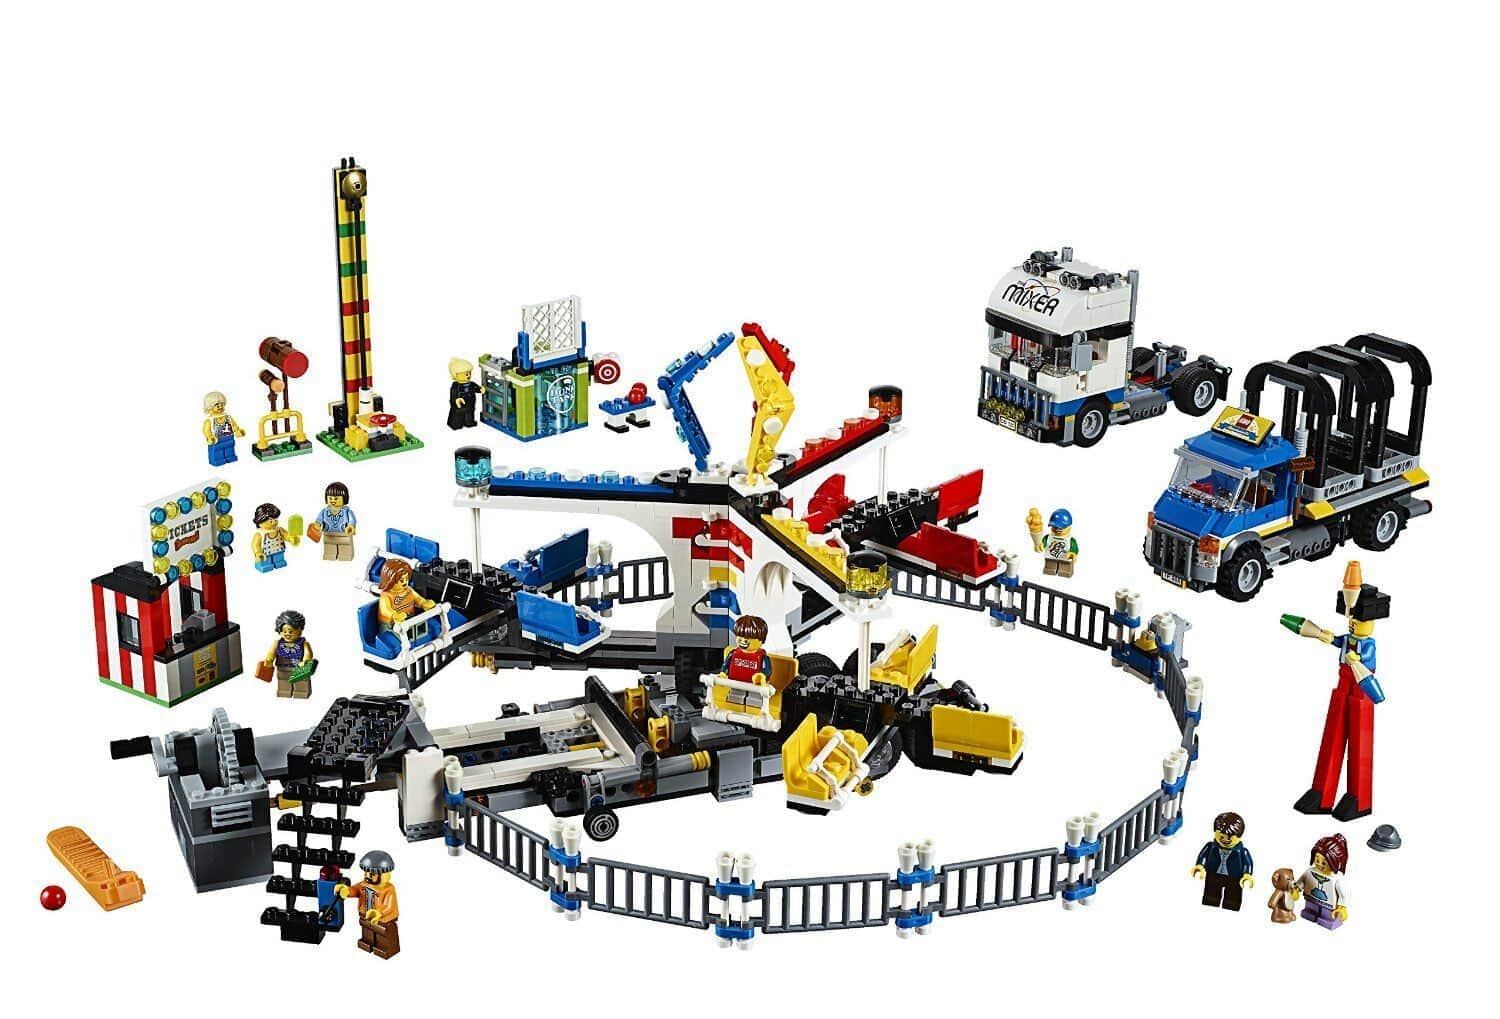 Конструктор LEGO Creator 10244 Передвижной парк аттракционов